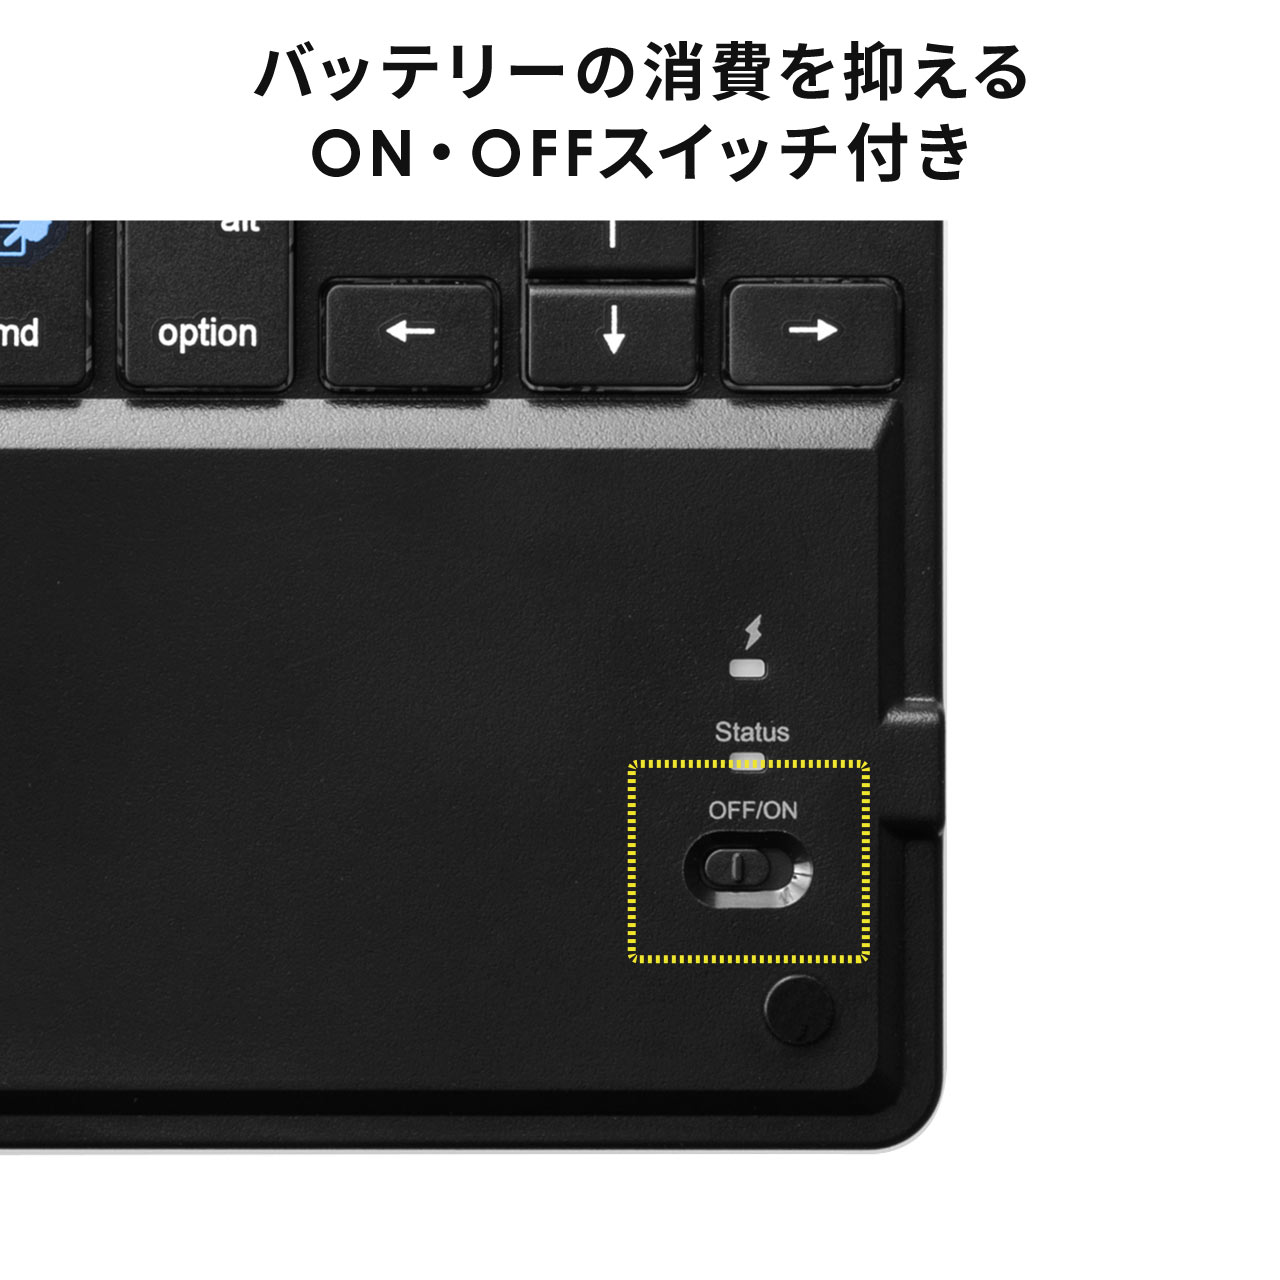 タッチパッド付き Bluetoothキーボード 充電式 Phone iPad用 英語配列 マルチペアリング対応 スタンド付き ブラック 400-SKB071